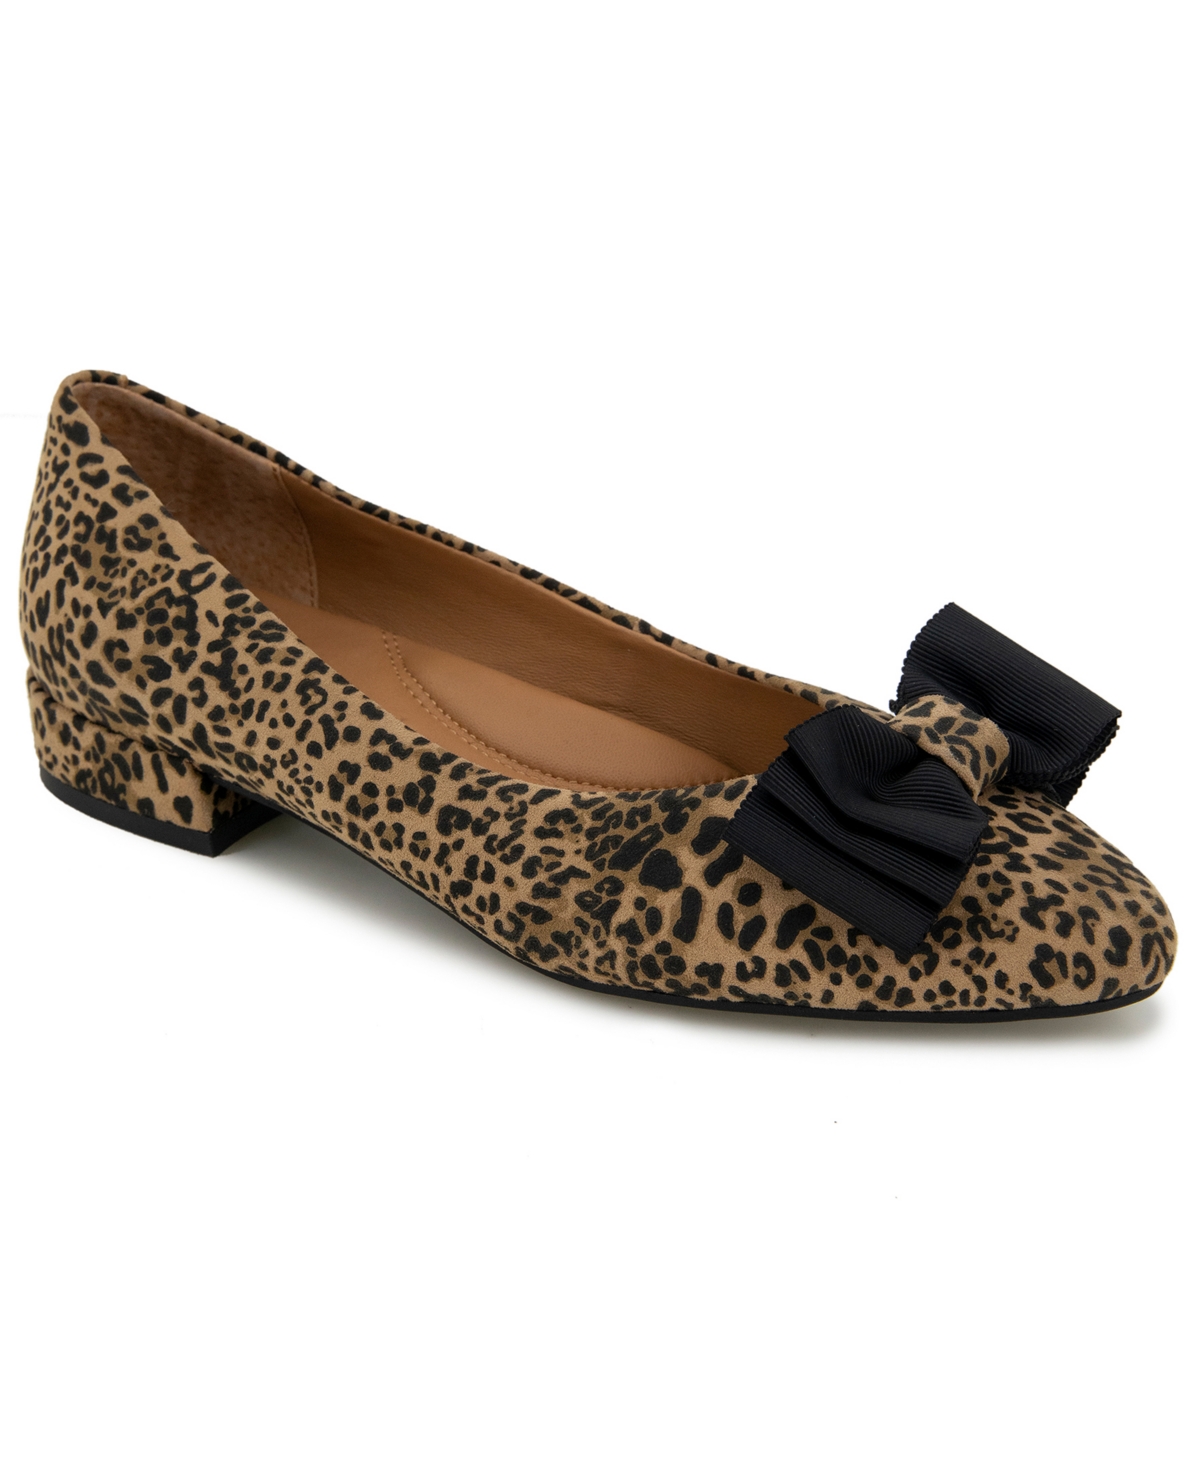 Women's Atlas Flat Heel Sandal - Leopard - Leather